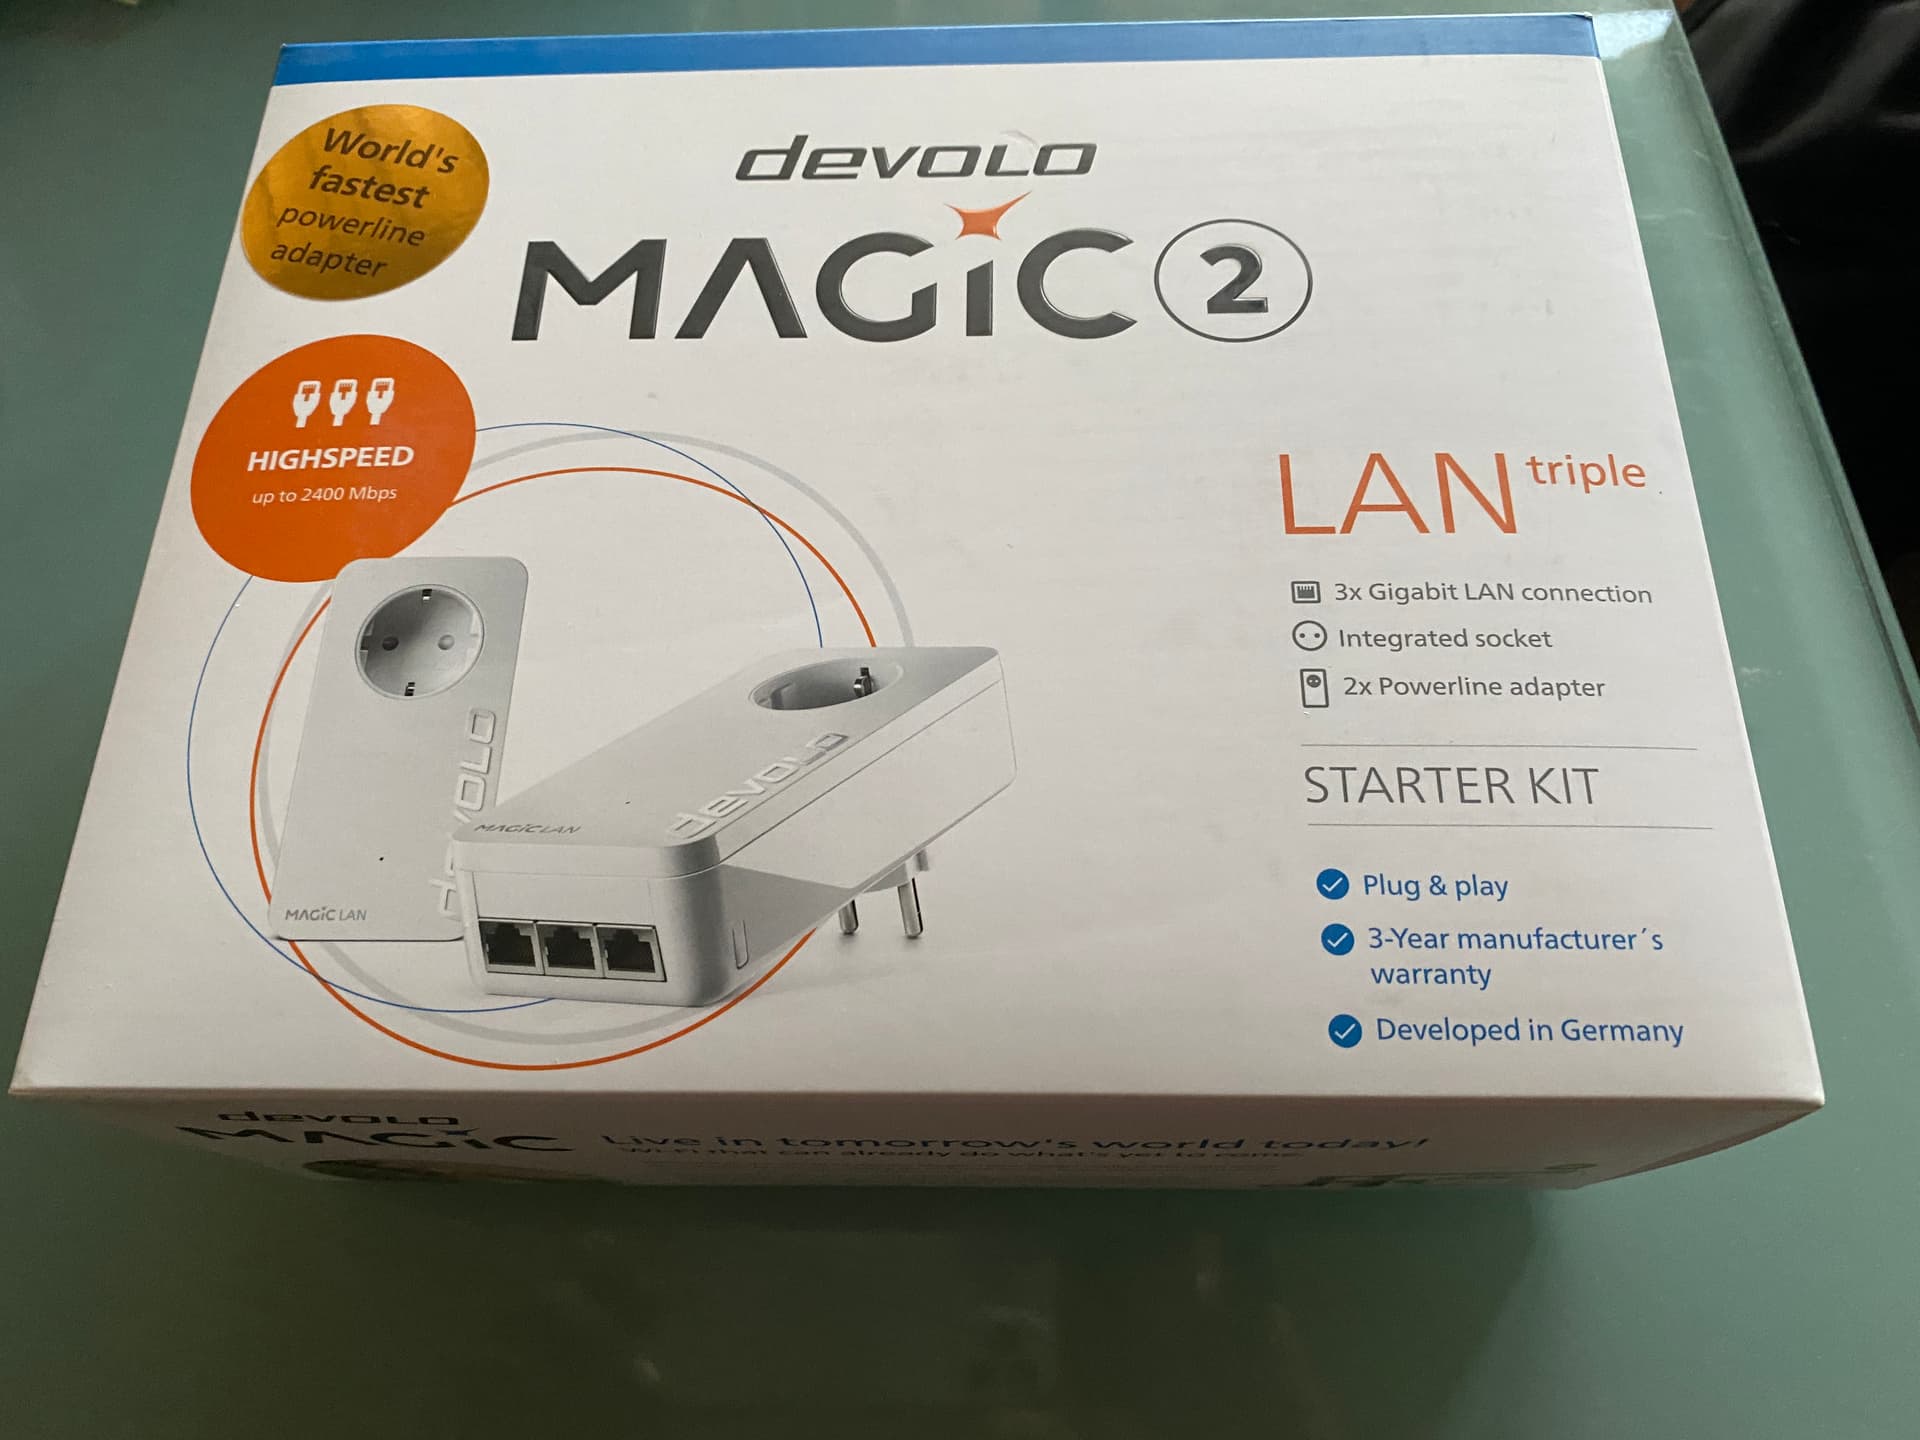 Devolo Magic 2 LAN Triple